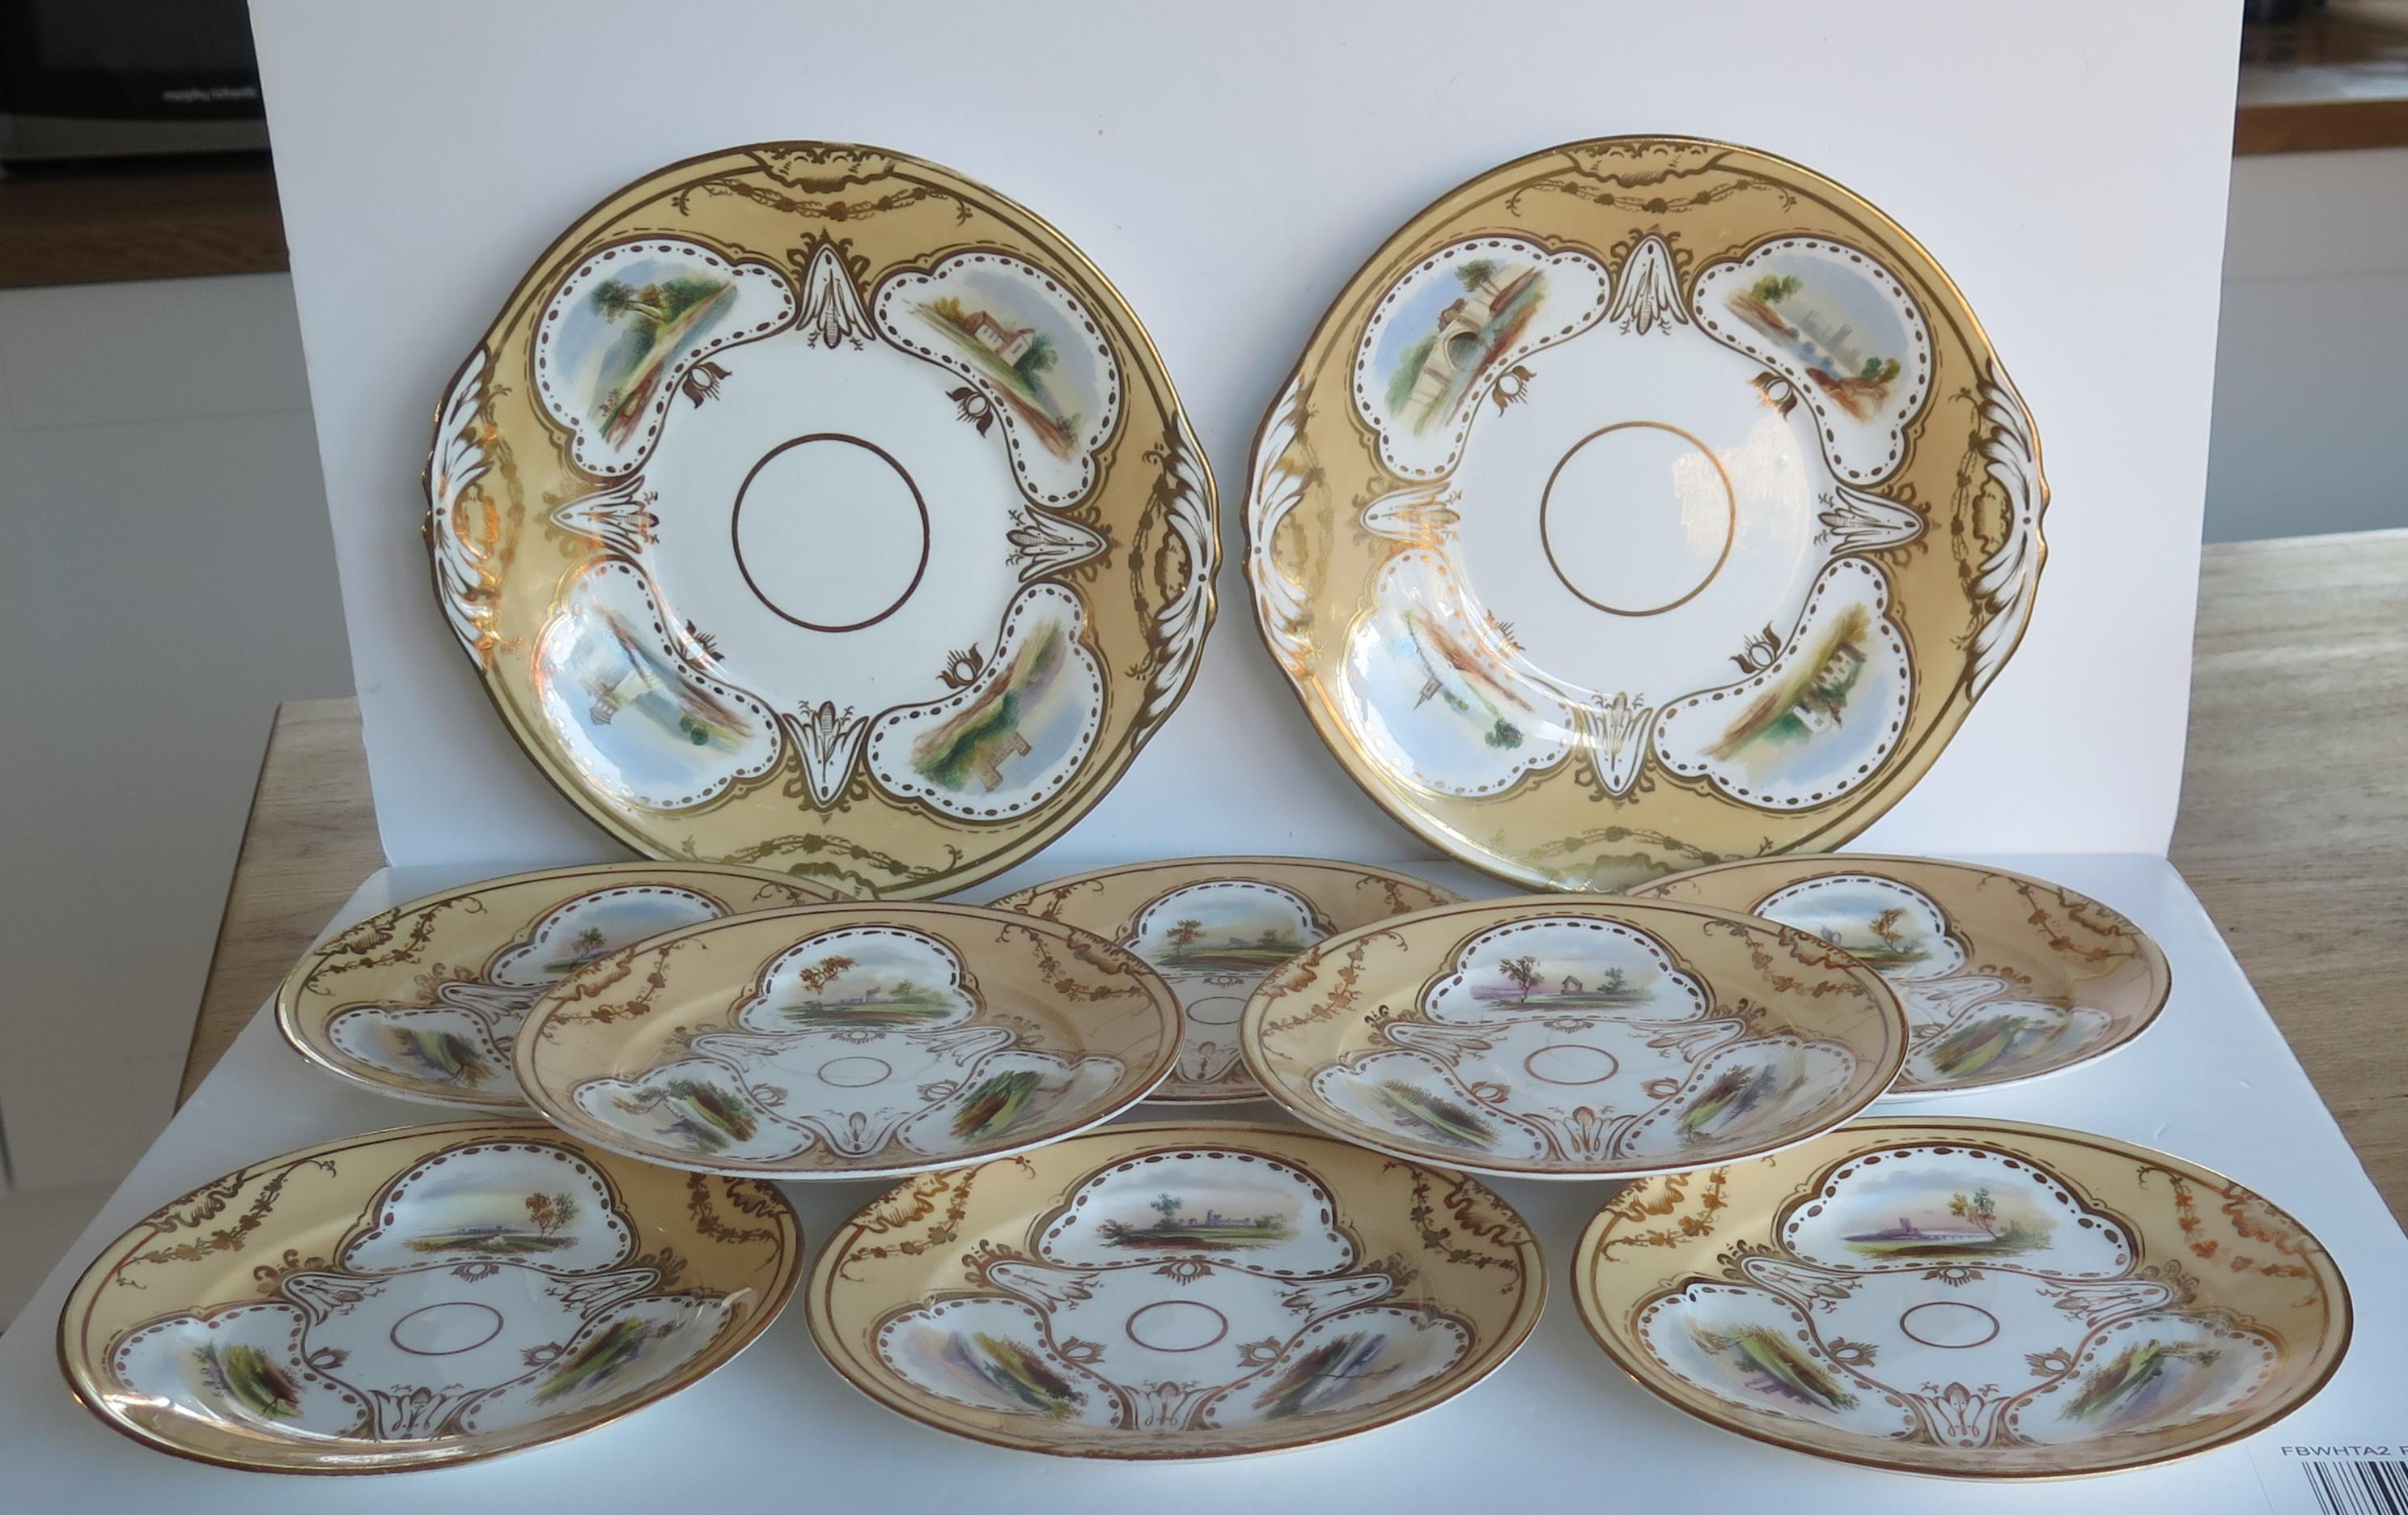 Il s'agit d'un service en porcelaine de haute qualité du début du XIXe siècle, composé de deux grandes assiettes de service et de huit assiettes d'accompagnement assorties, toutes peintes à la main de différentes scènes, que nous attribuons à